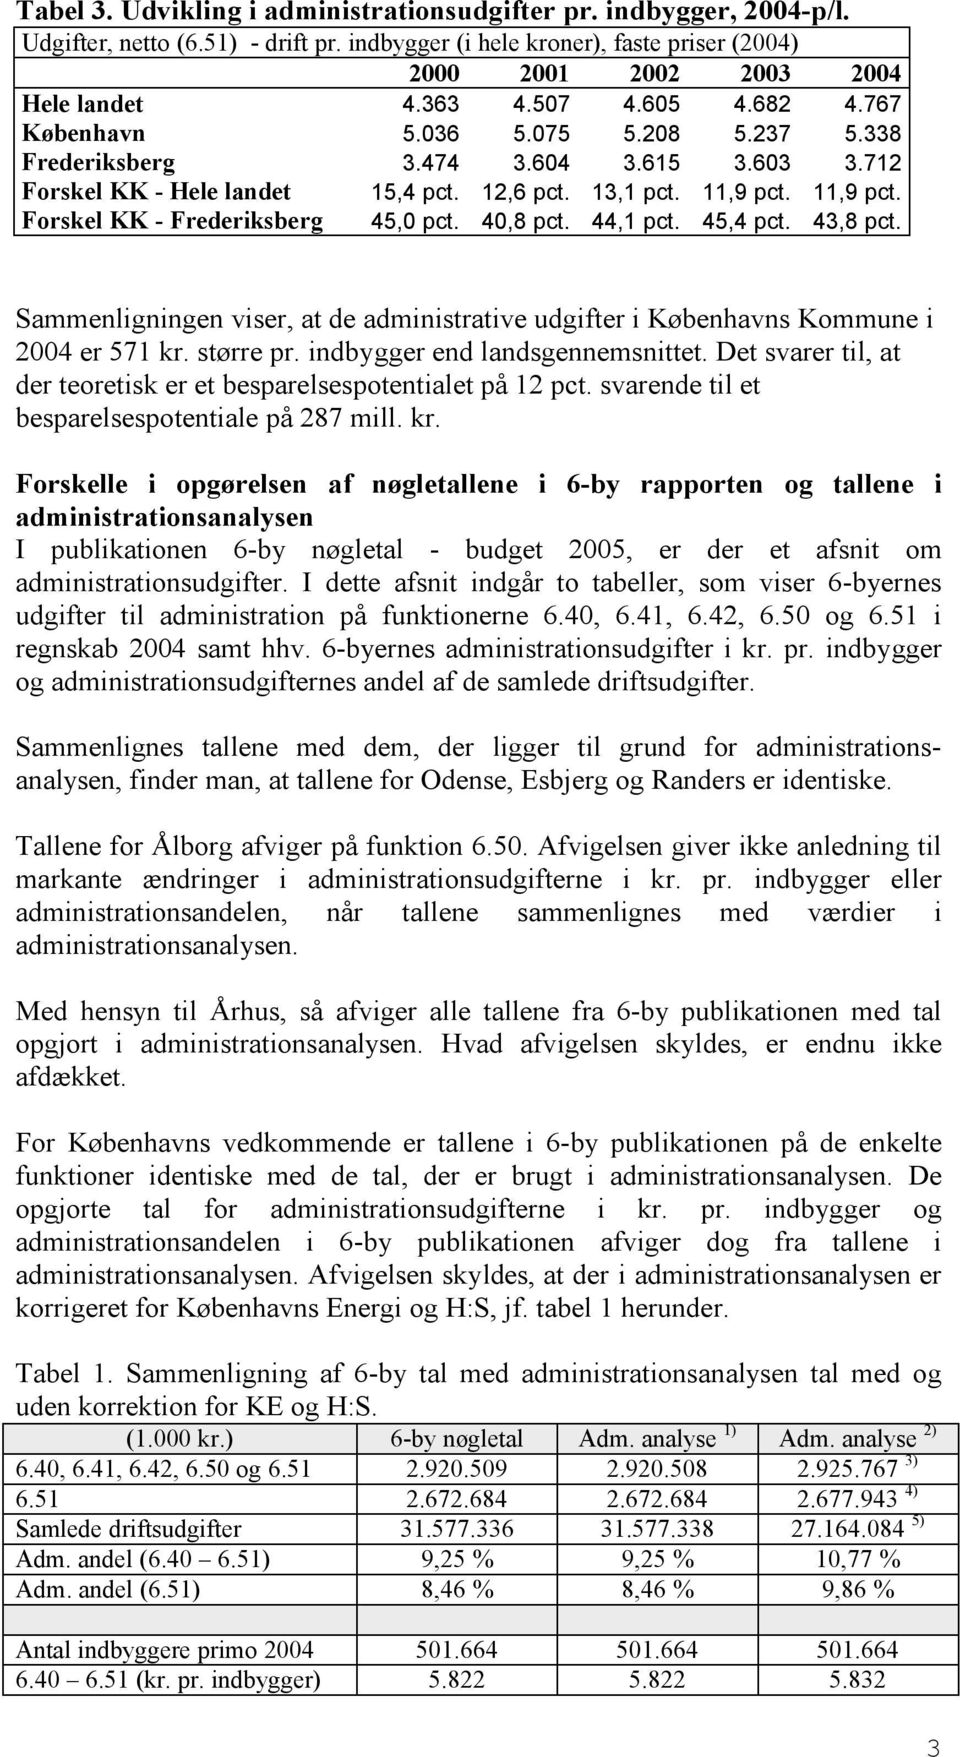 11,9 pct. Forskel KK - Frederiksberg 45,0 pct. 40,8 pct. 44,1 pct. 45,4 pct. 43,8 pct. Sammenligningen viser, at de administrative udgifter i Københavns Kommune i 2004 er 571 kr. større pr.